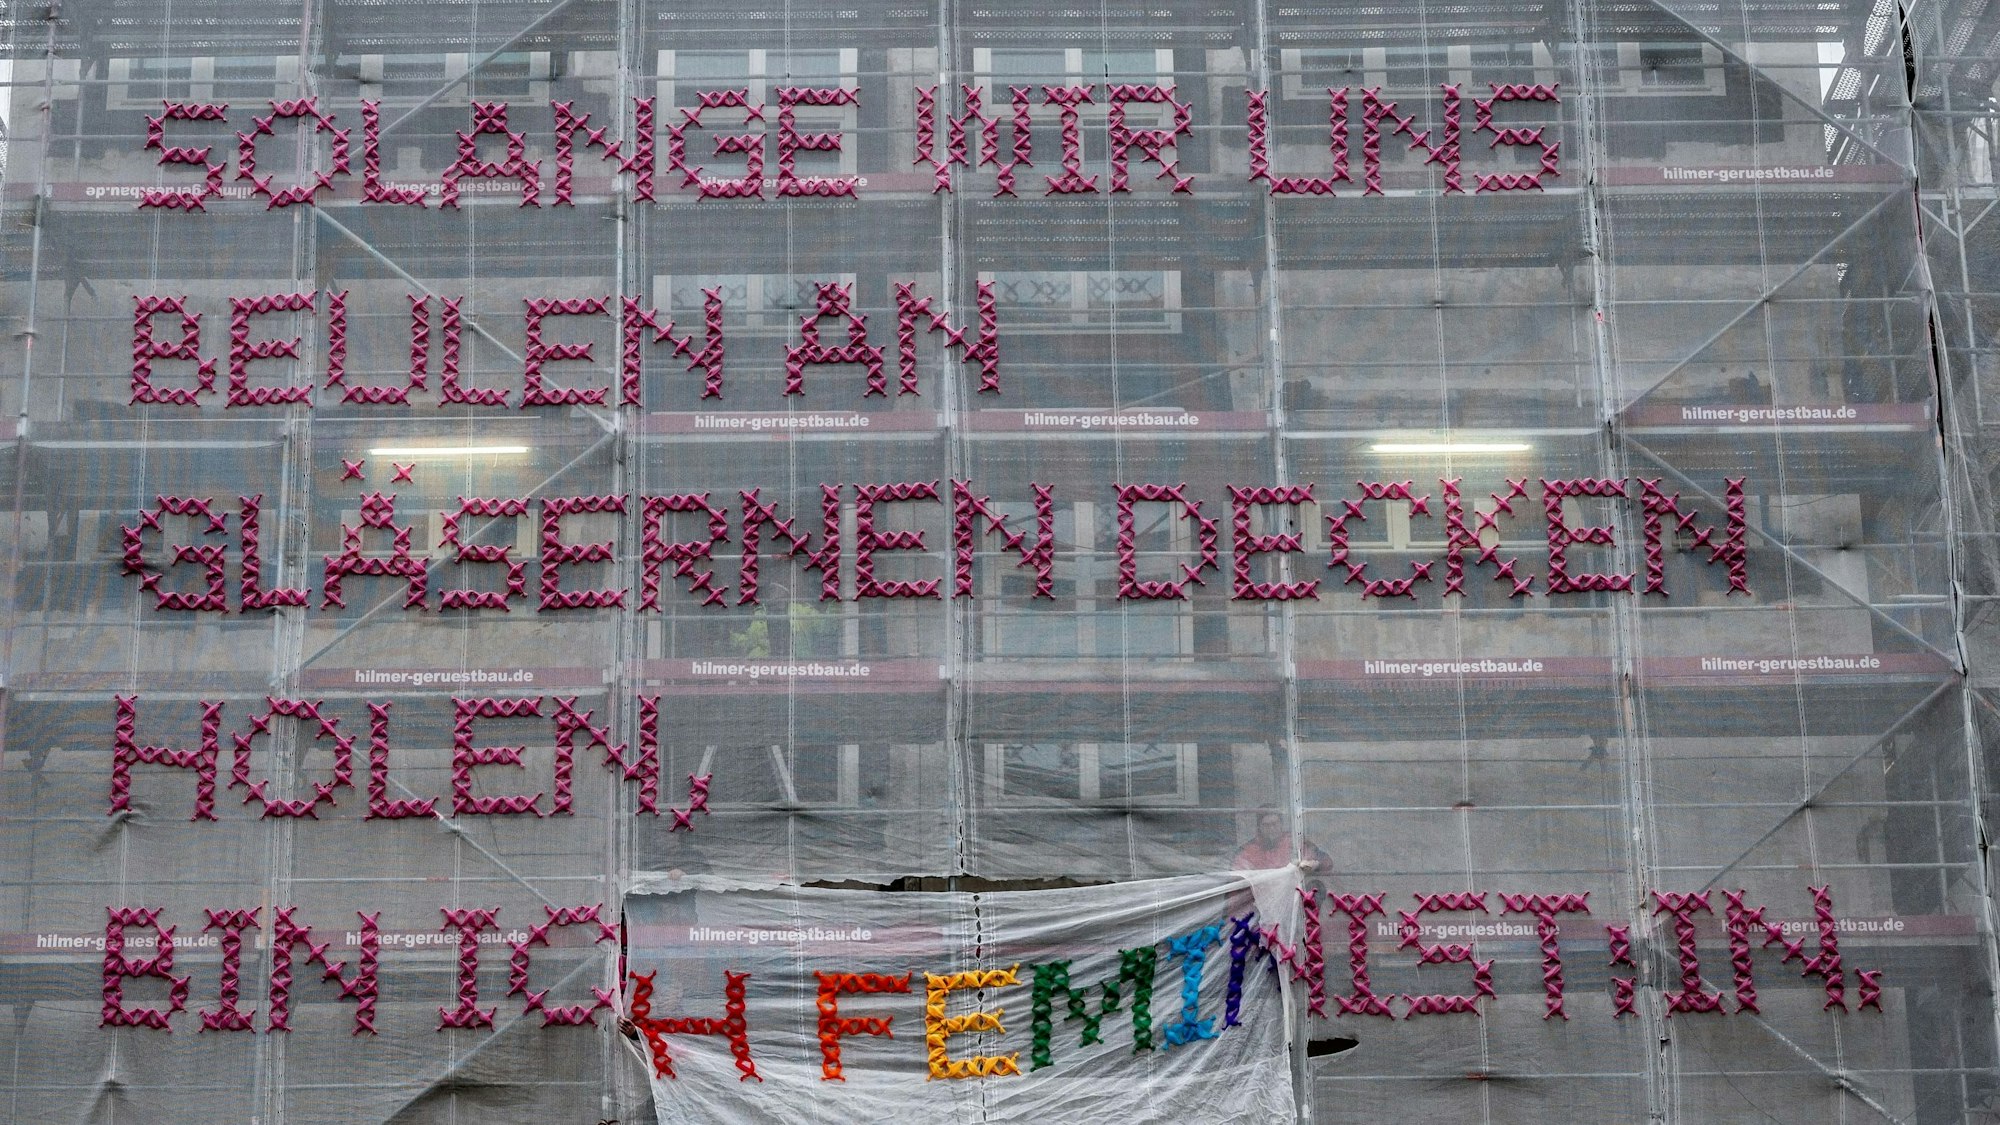 30.11.2022, Köln:Reparatur des SOLANGE-Kunstwerks an der Uni Köln. Foto: Uwe Weiser